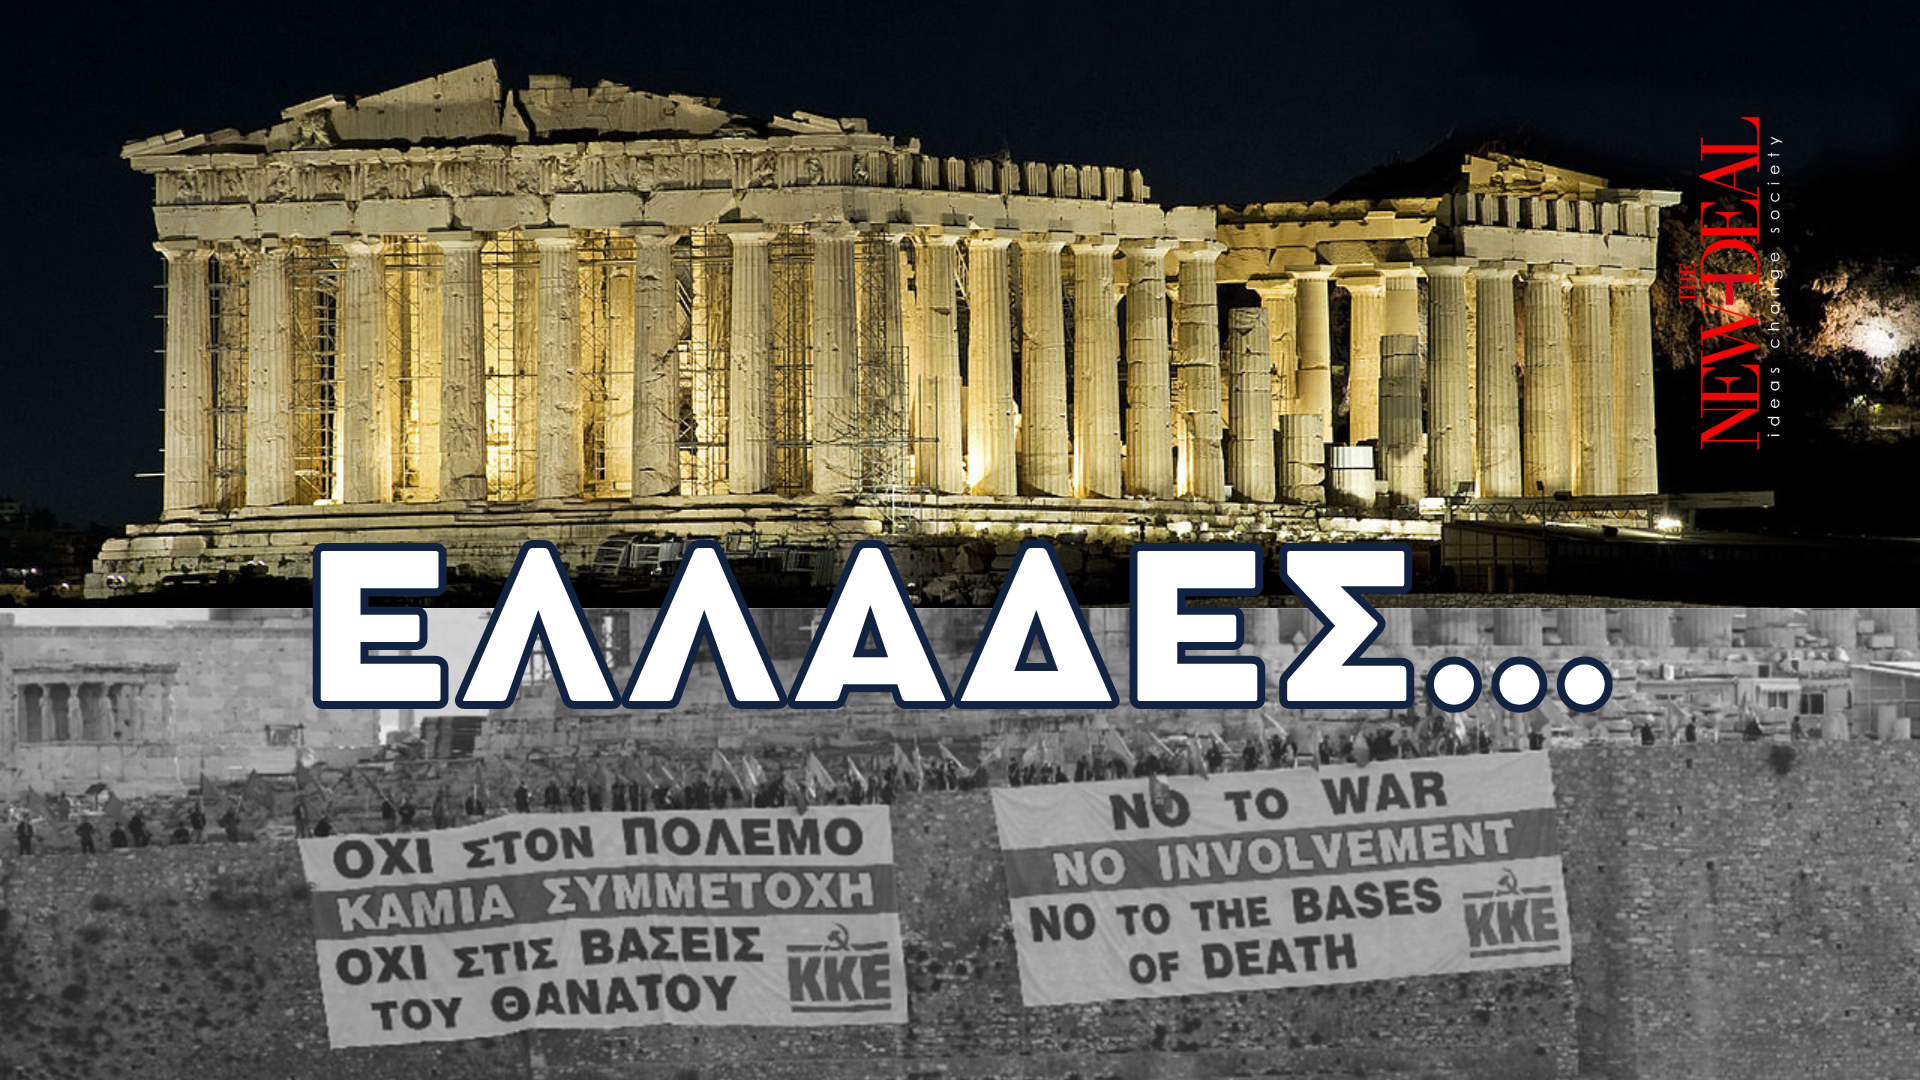 Ο Λουκάς Γεωργιάδης σημειώνει ότι η επιλογή ψήφου θα προσδιοριστεί από την απάντηση σε 11 απλά ερωτήματα για την Ελλάδα που θέλουμε… new deal